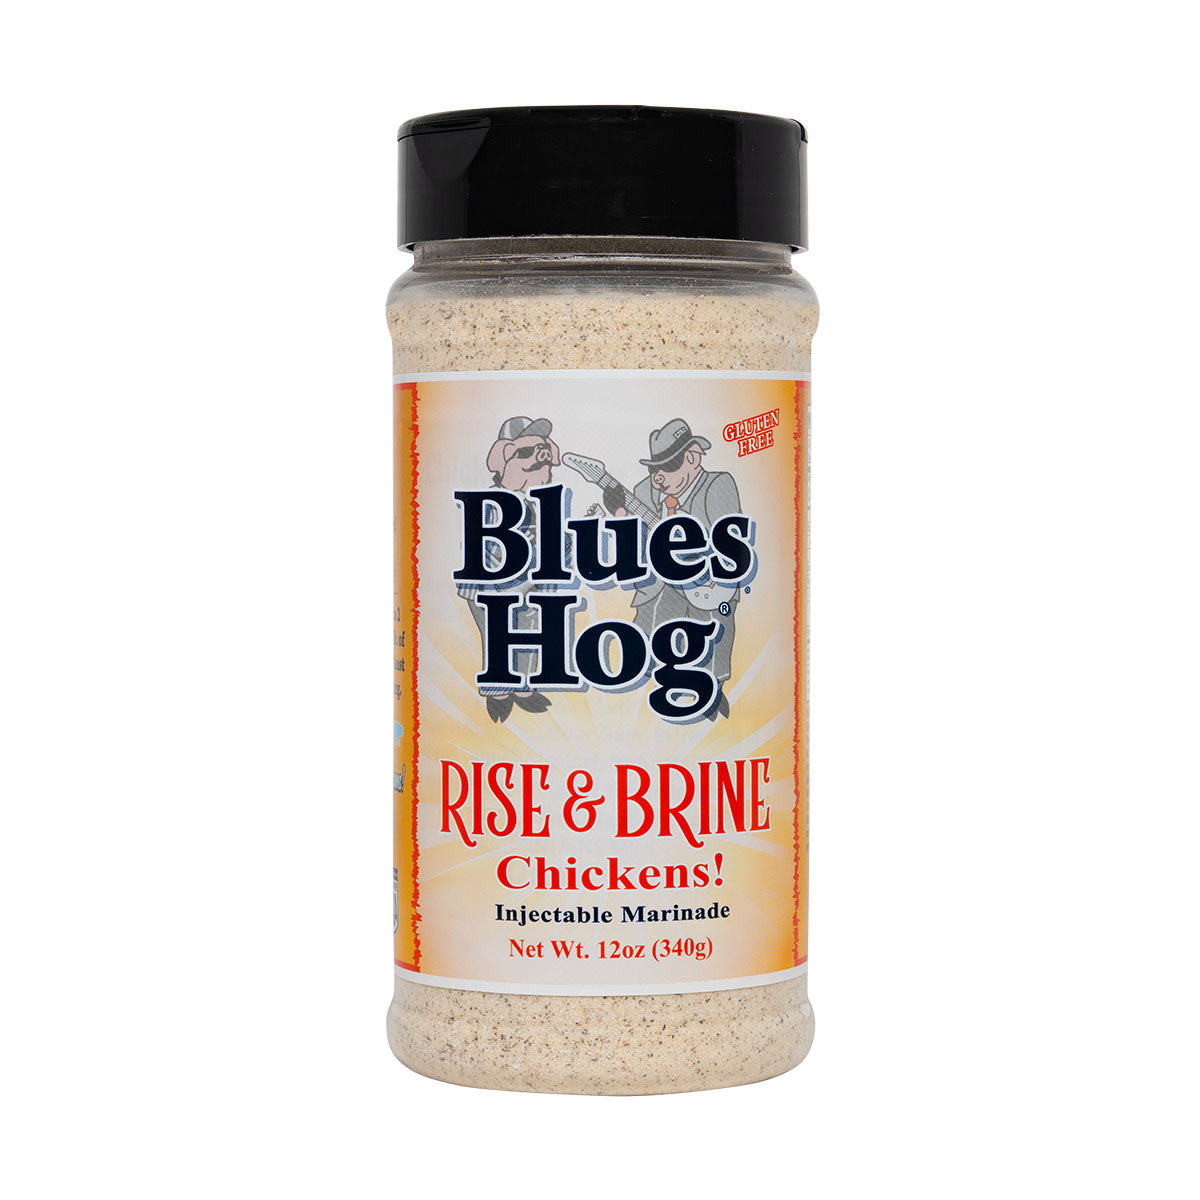 Rise & Brine Chicken Marinade - 12oz - Blues Hog